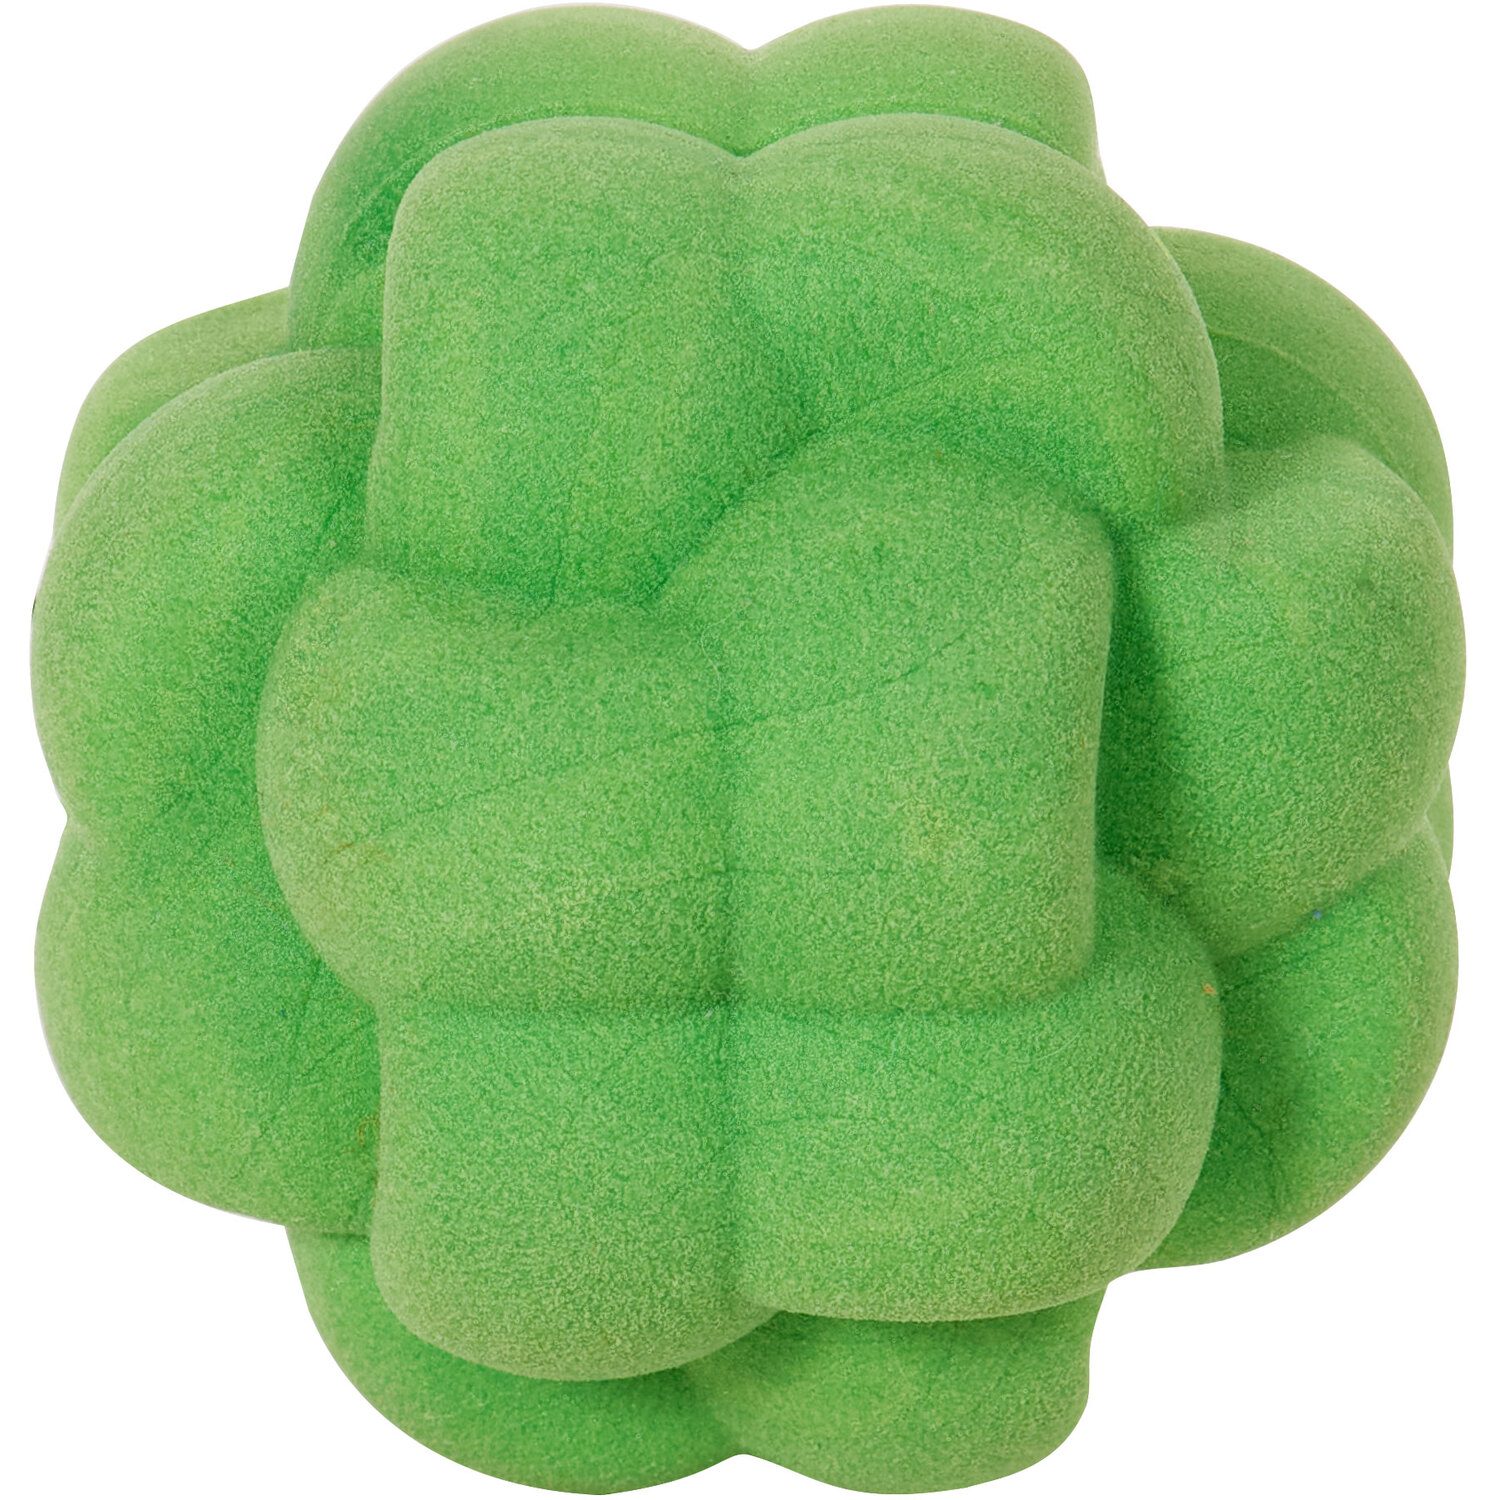 Floating Sponge Weave Ball Dog Toy Image 2